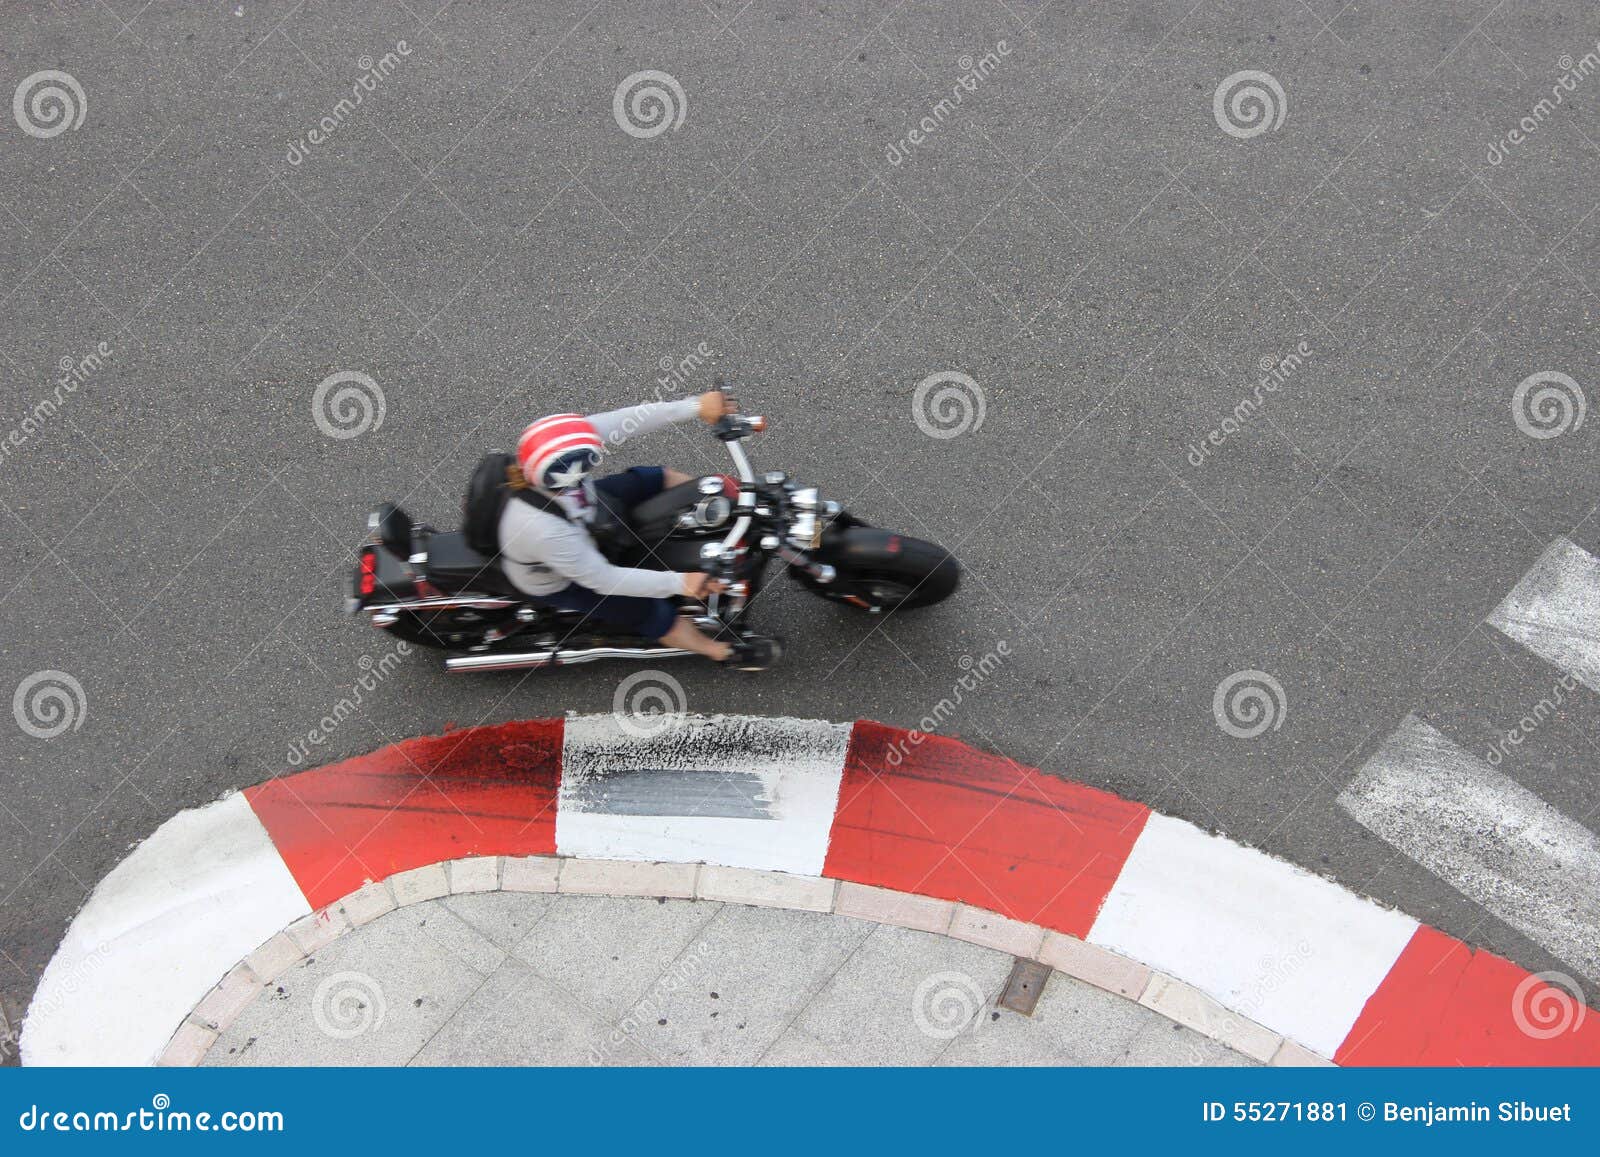 Ein Motorrad in Monaco. Ein Motorradfahrer auf einem Motorrad Draufsicht Monacos